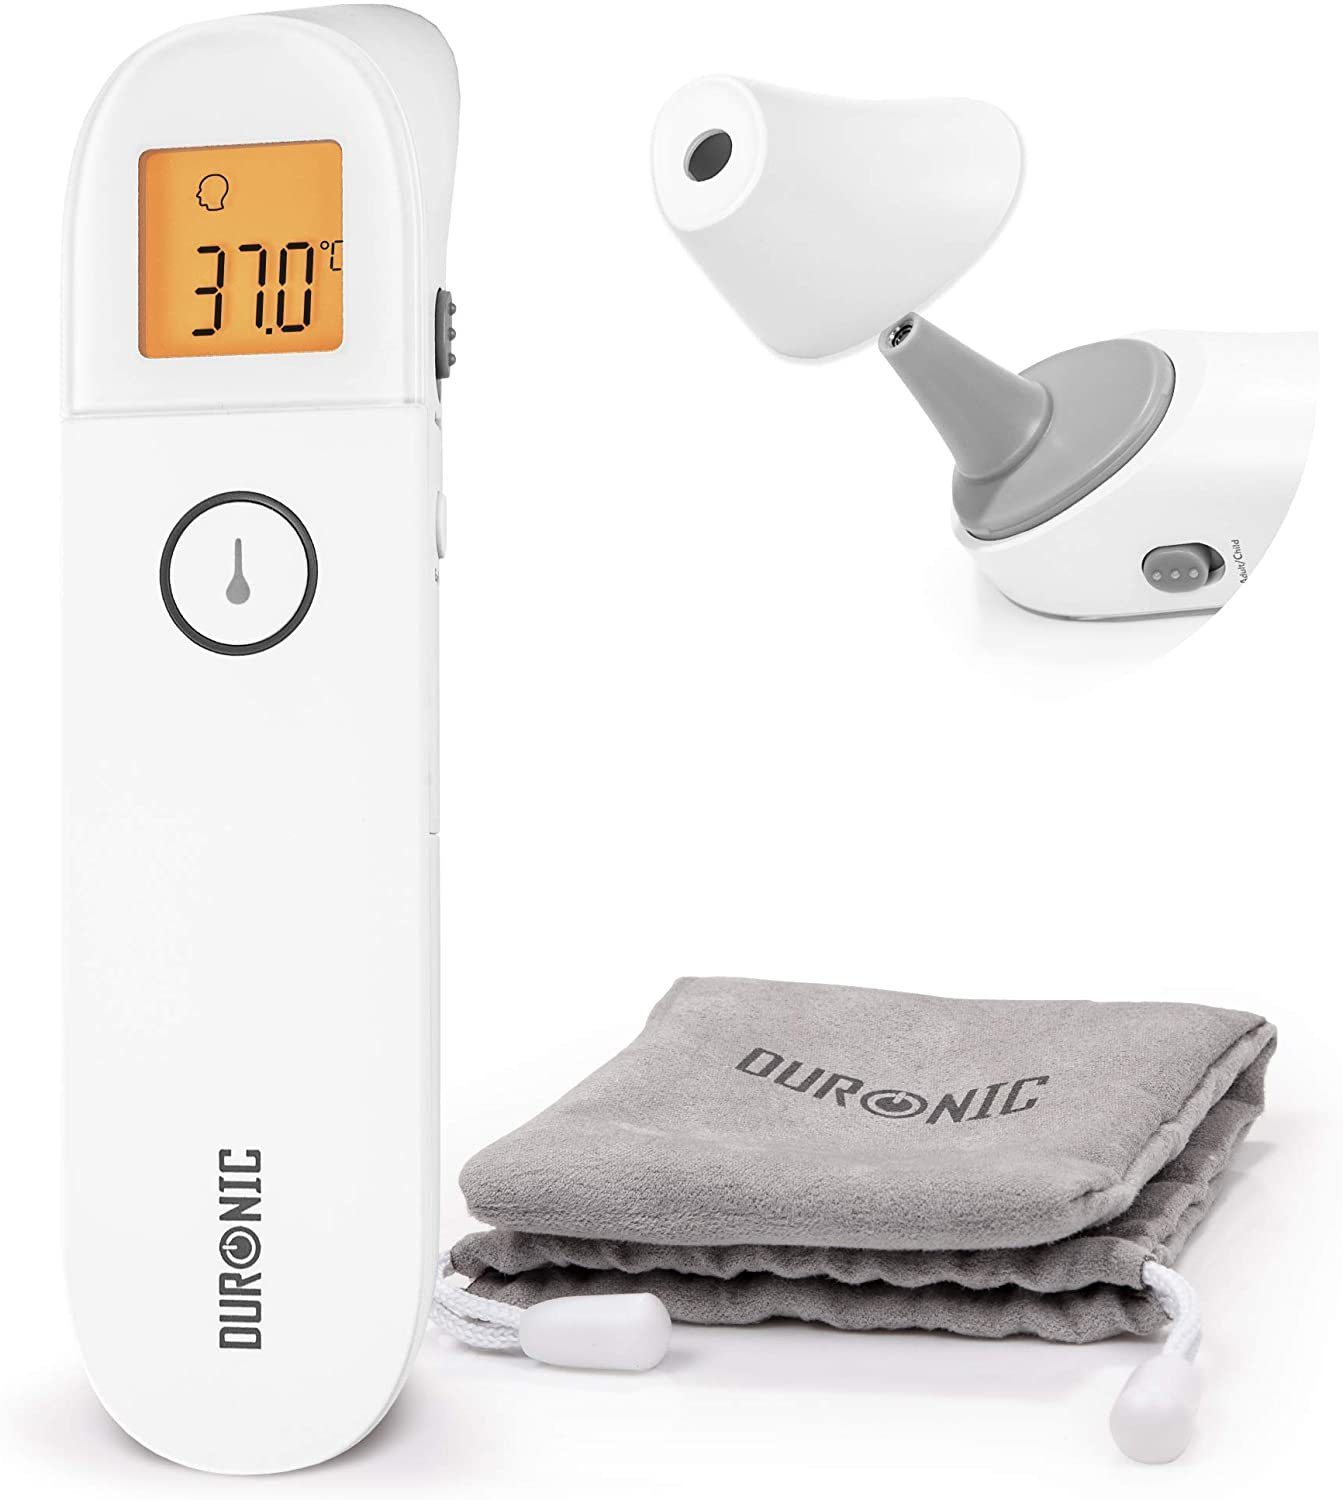 Duronic Infrarot-Thermometer, IRT3W in Einfache 3 Babys, Kinder, Gegenstände, 1 und Strinthermometer Fiebermessung, und Für Bedienung Ergebnis Erwachsene genaues Infrarot-Thermometer, kontaktlos, Digitale